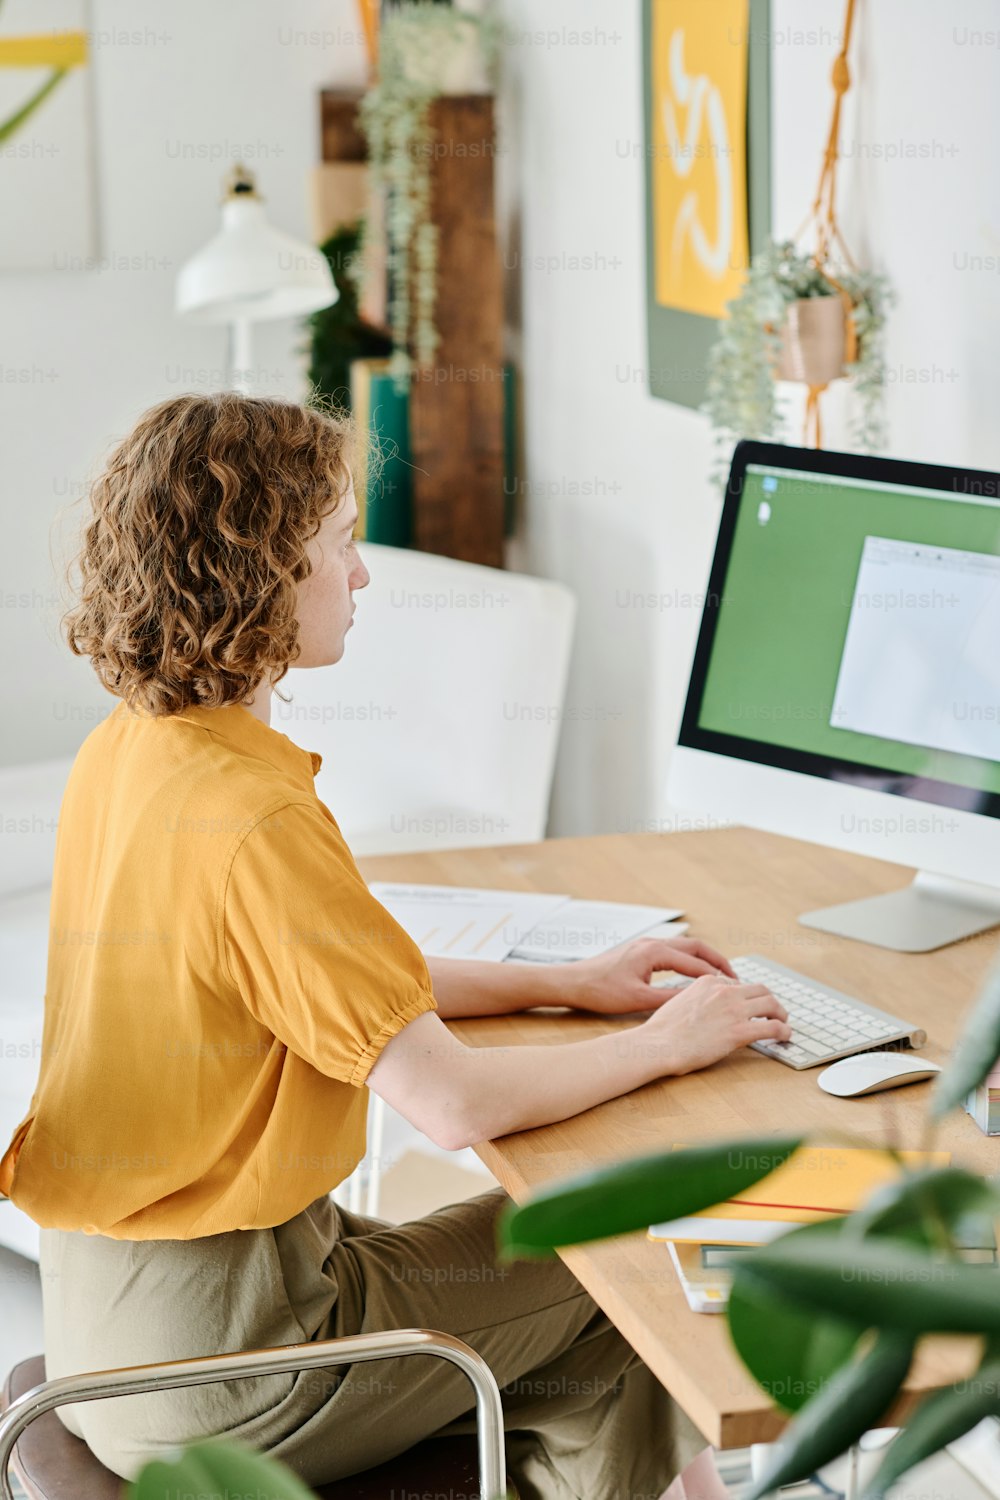 Jovem webdesigner freelancer em trajes casuais com as mãos sobre o teclado olhando para o documento eletrônico na tela do computador